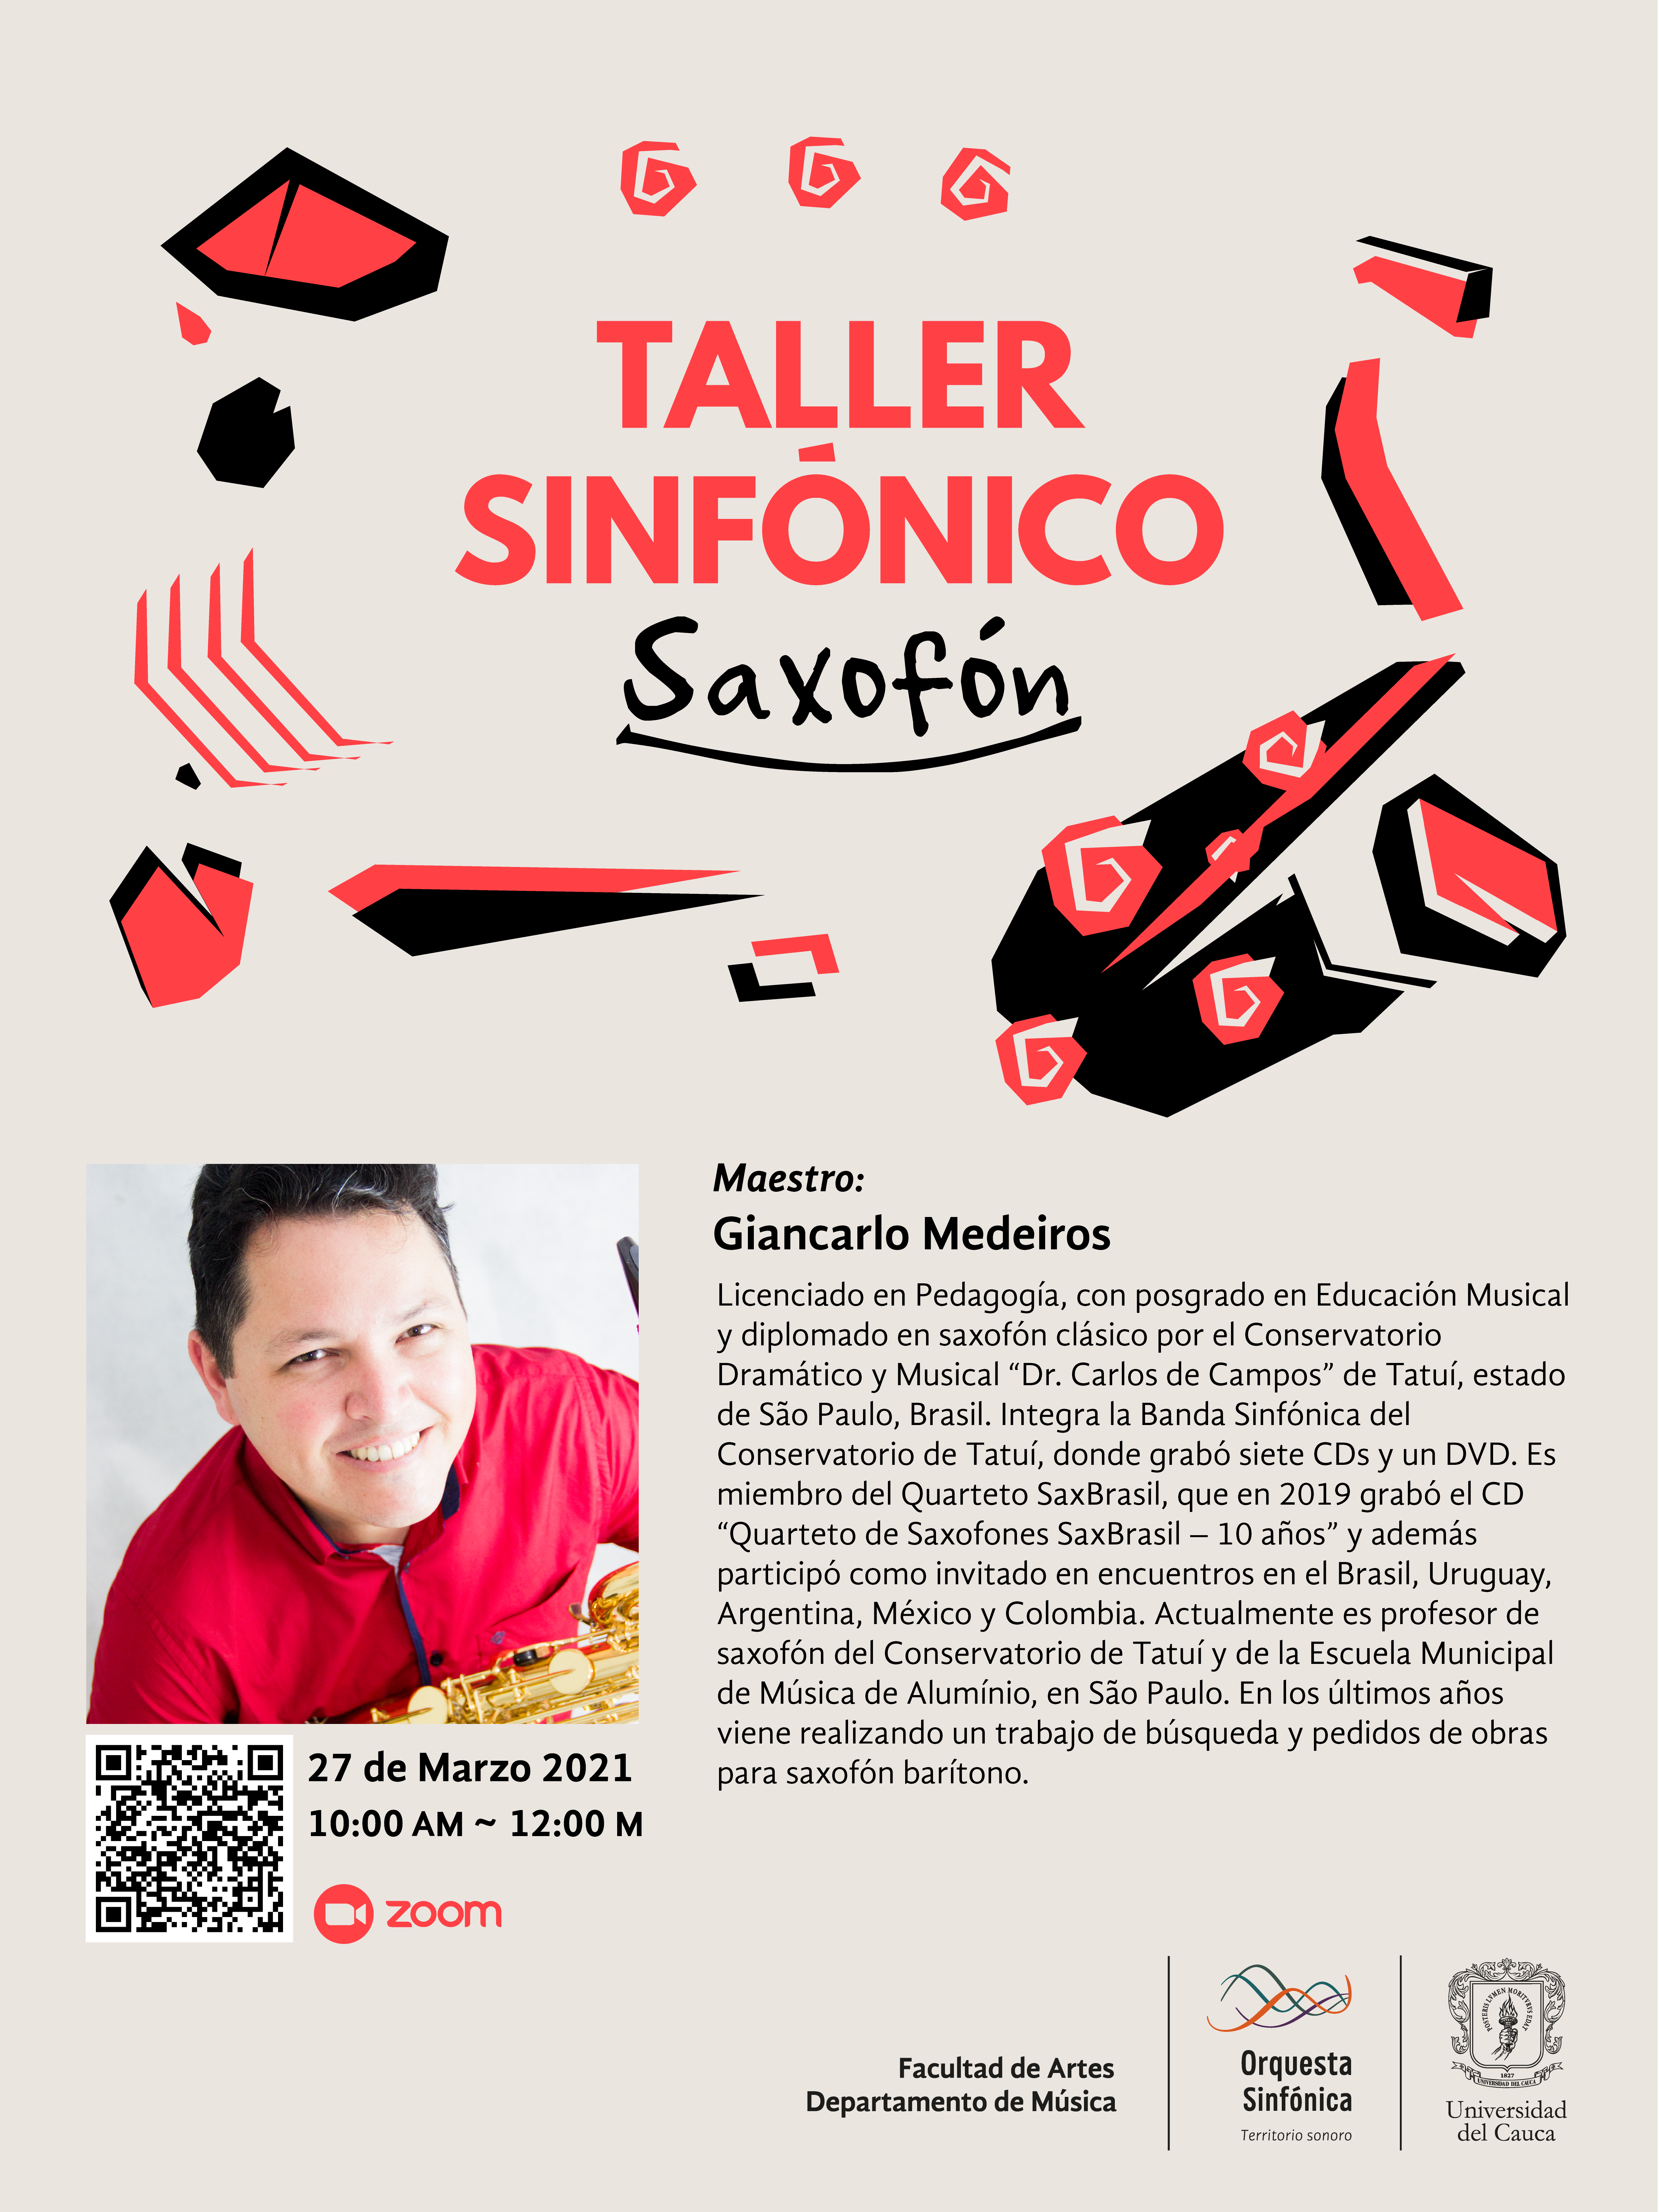 Taller Sinfónico con Giancarlo Medeiros, Saxofón. 